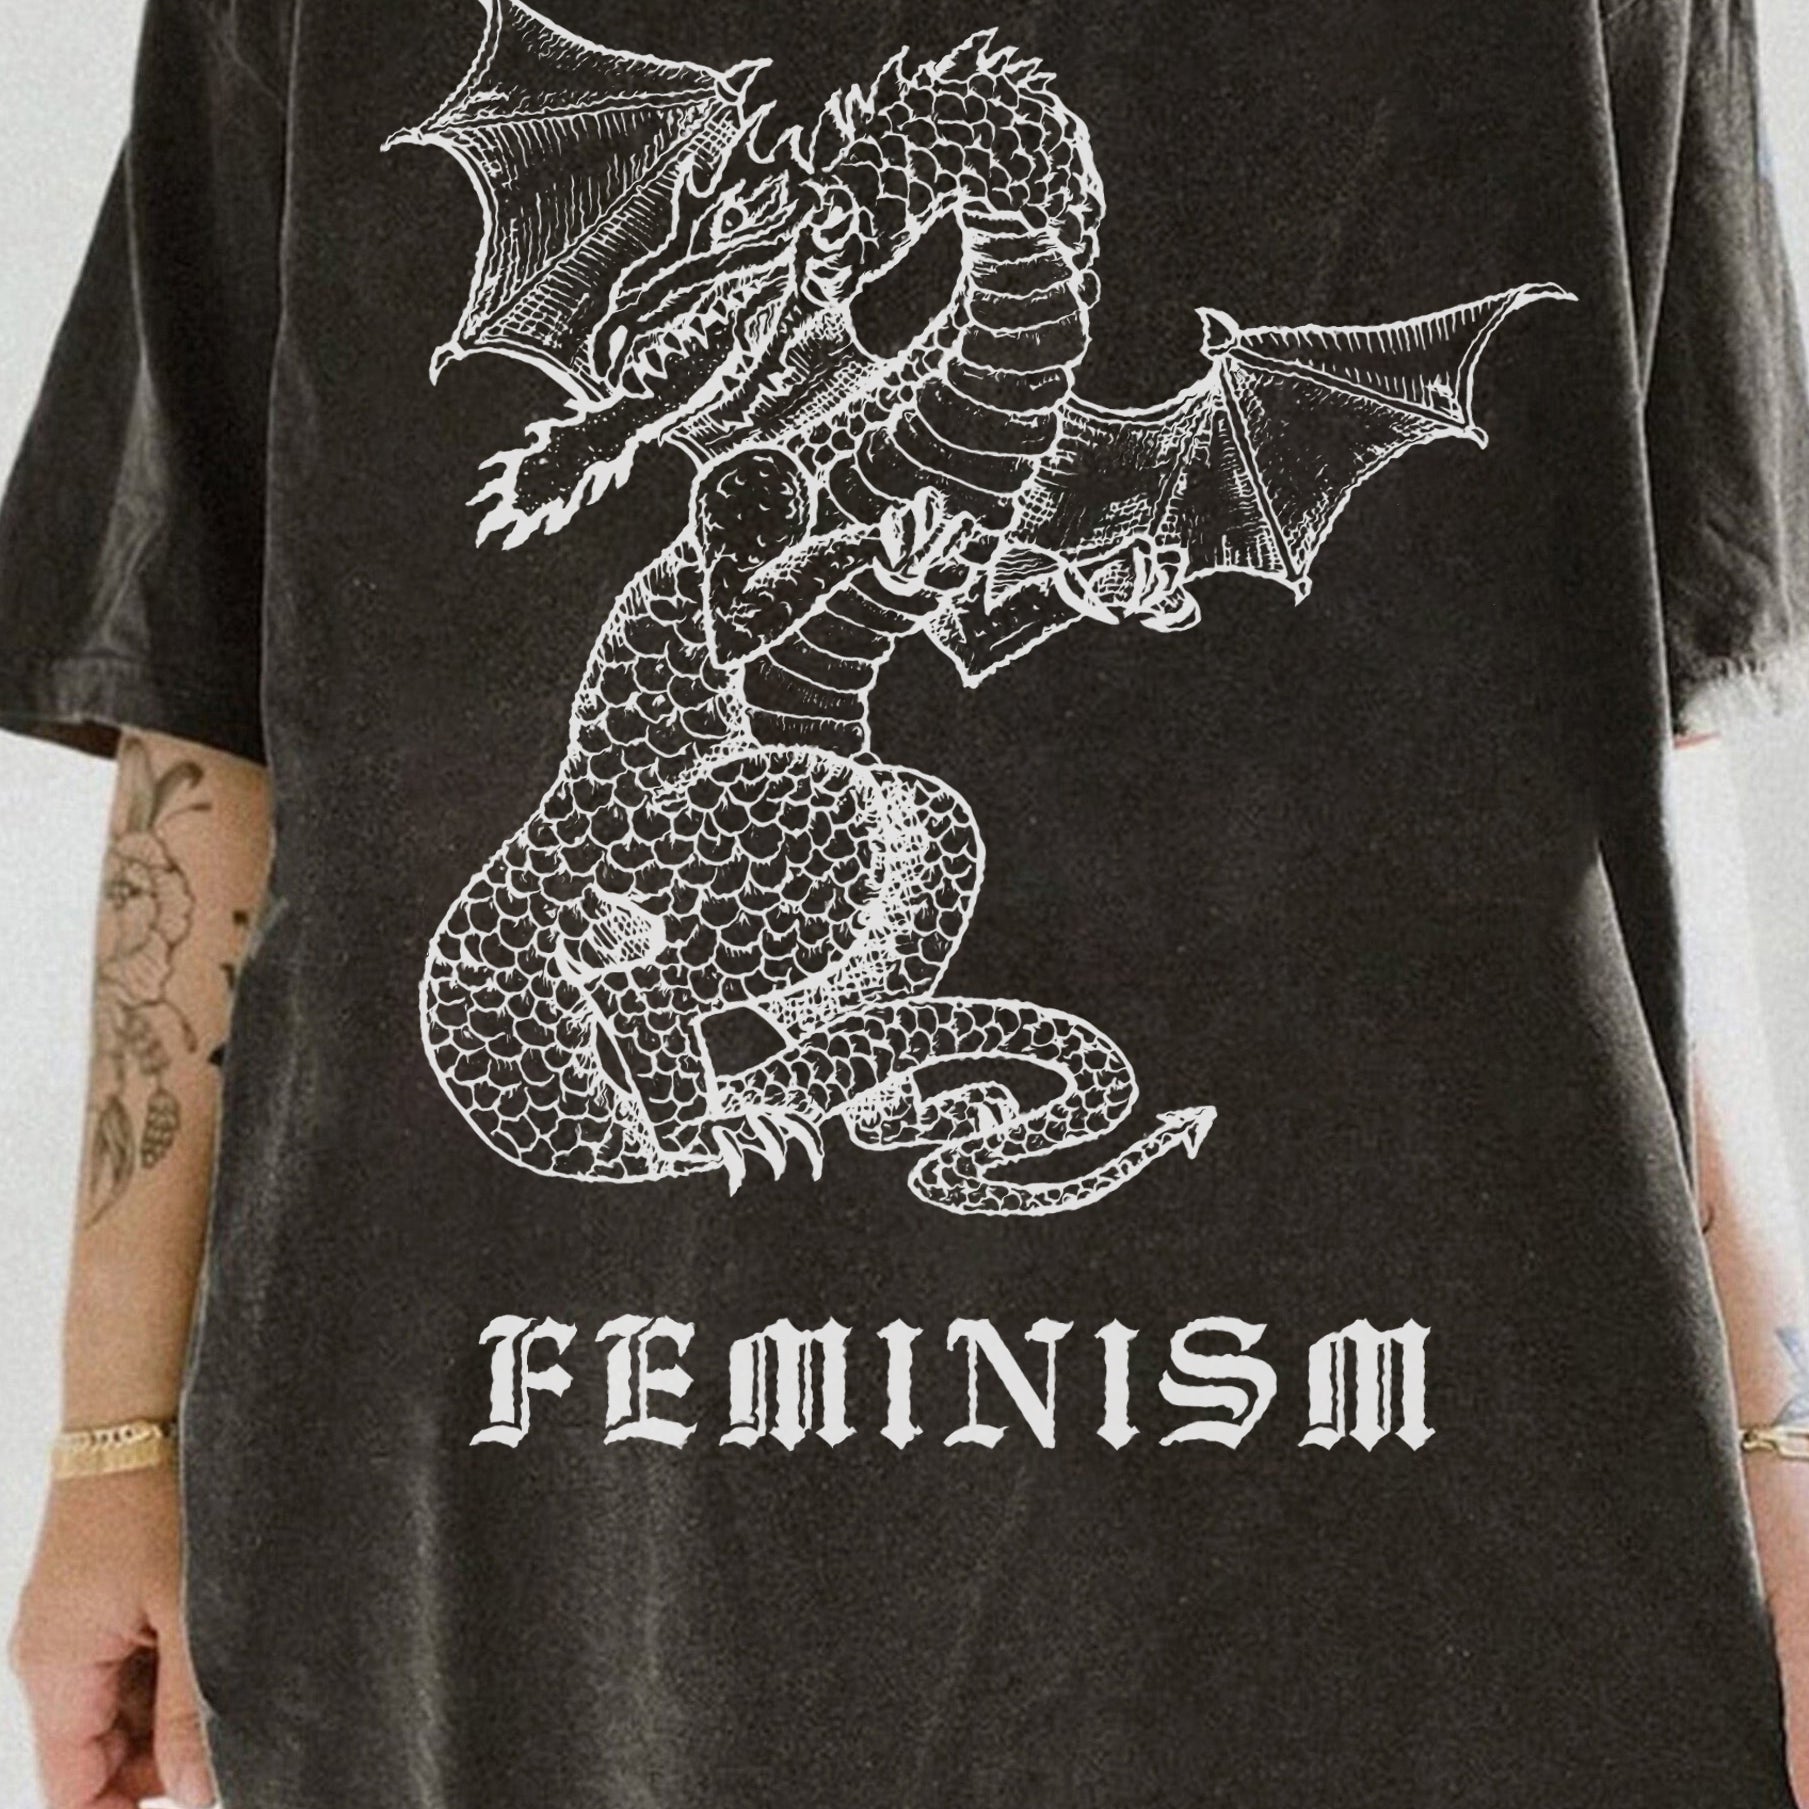 White Dragon Feminism Tee For Women